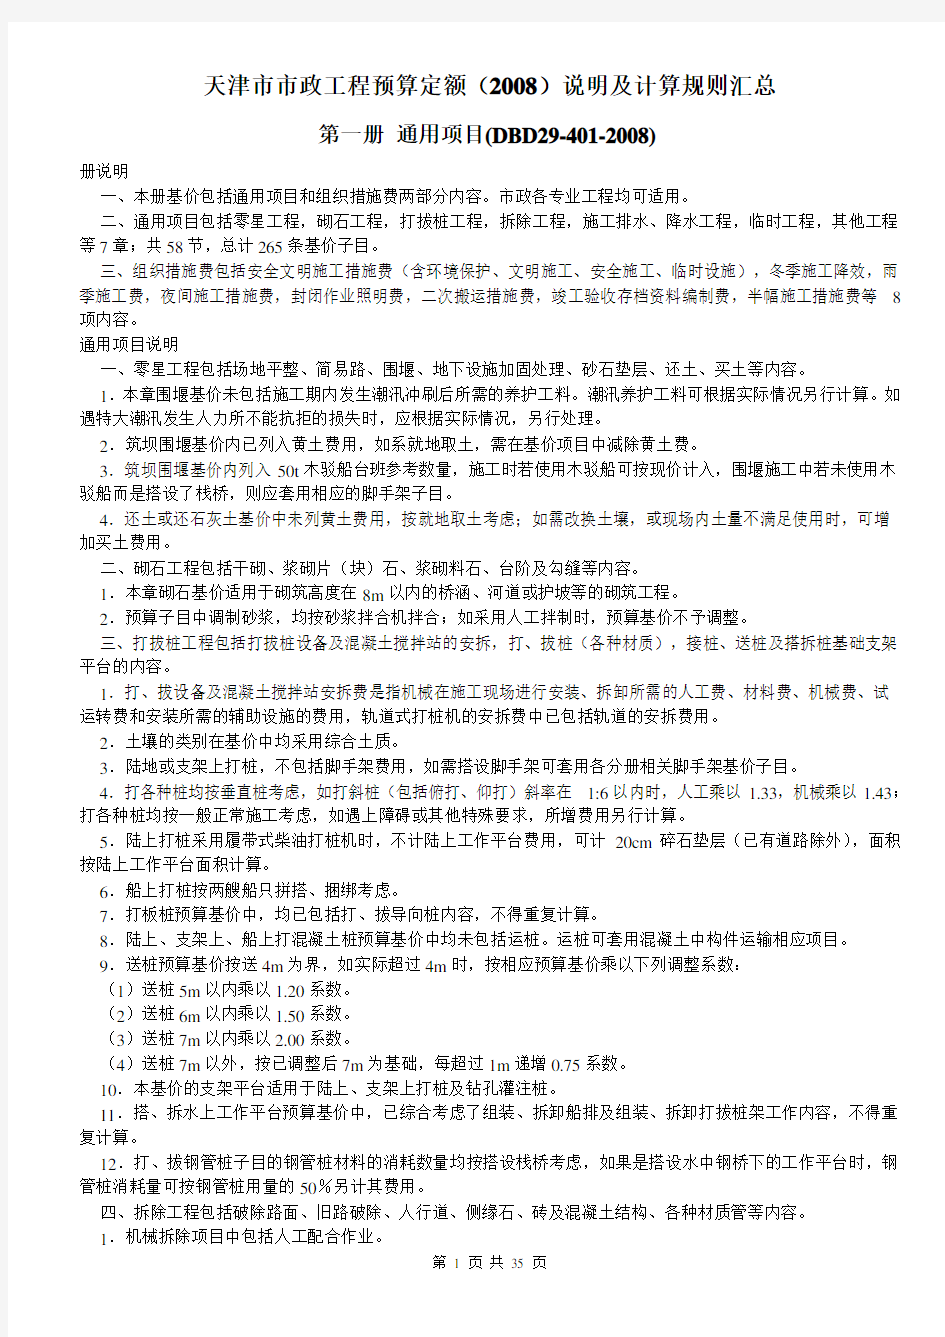 天津市建市政工程预算定额(2008)说明及计算规则汇总